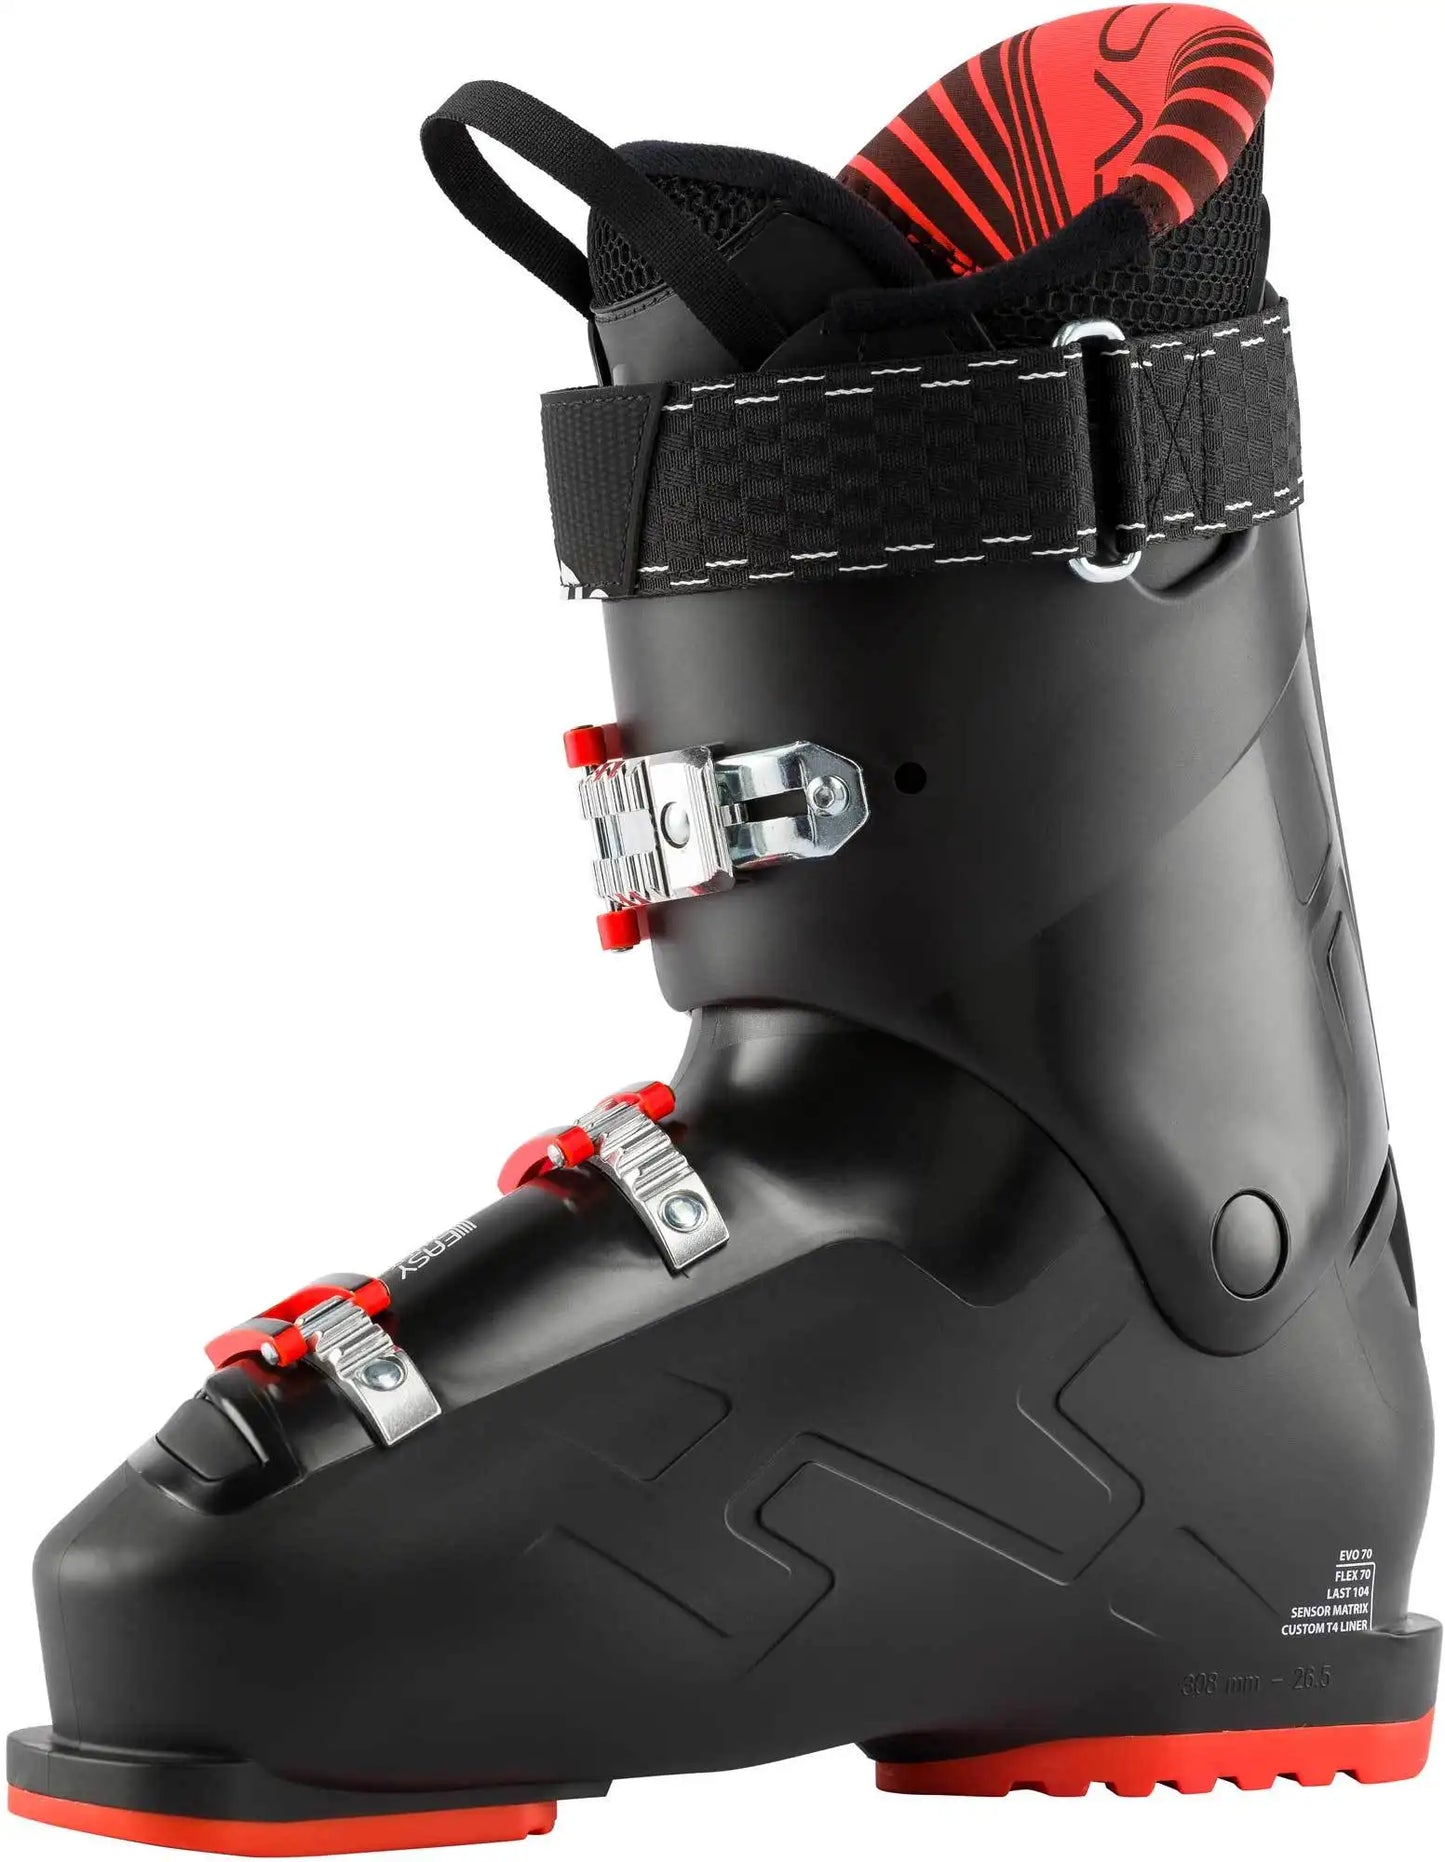 Rossignol Evo Ski Boot kit